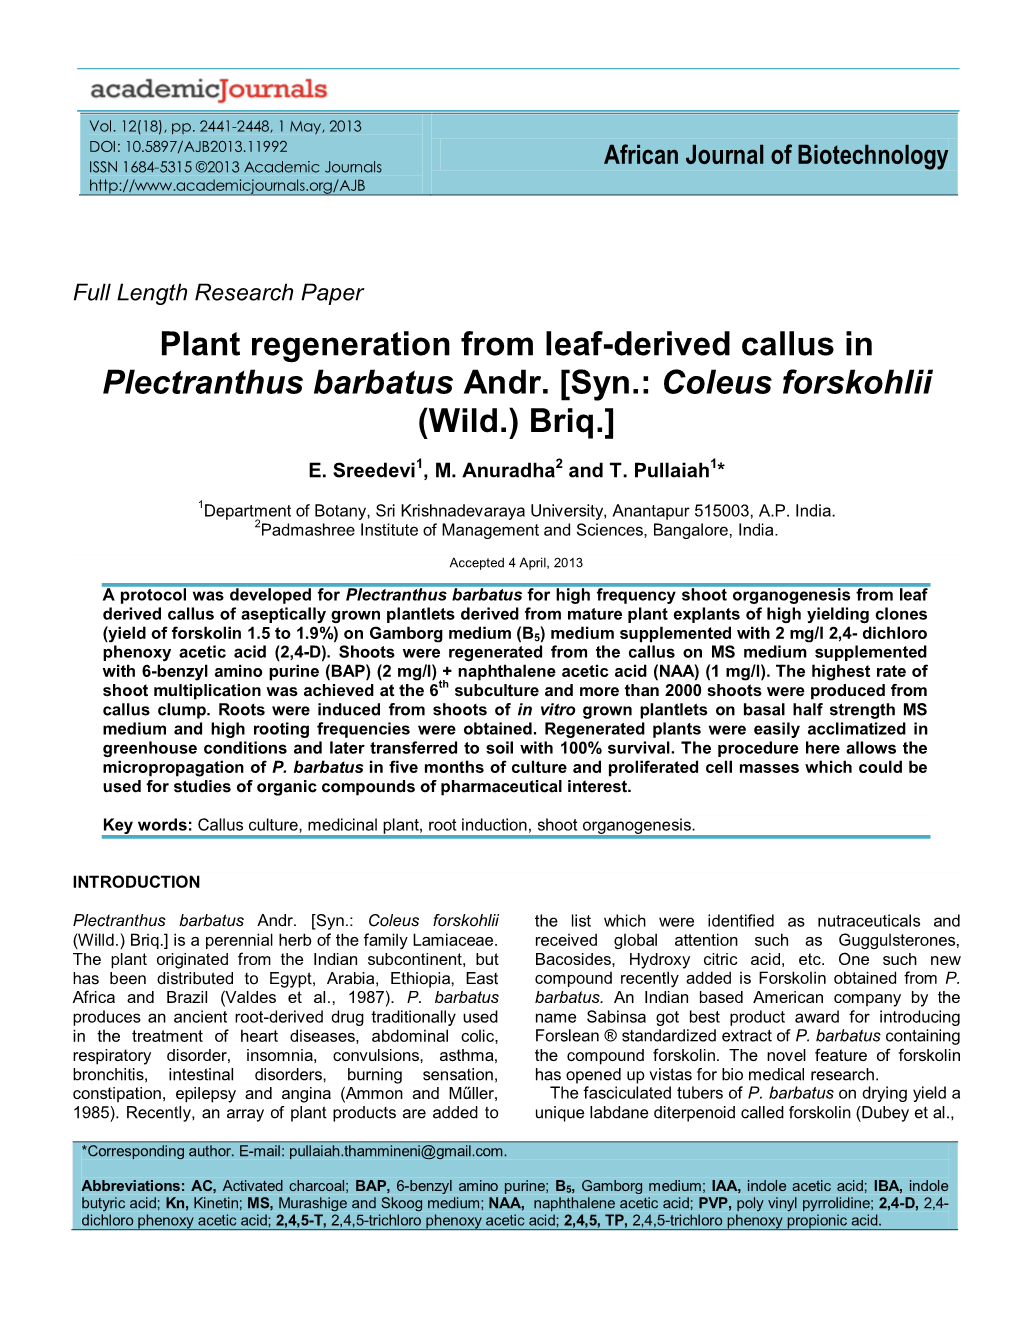 Plant Regeneration from Leaf-Derived Callus in Plectranthus Barbatus Andr